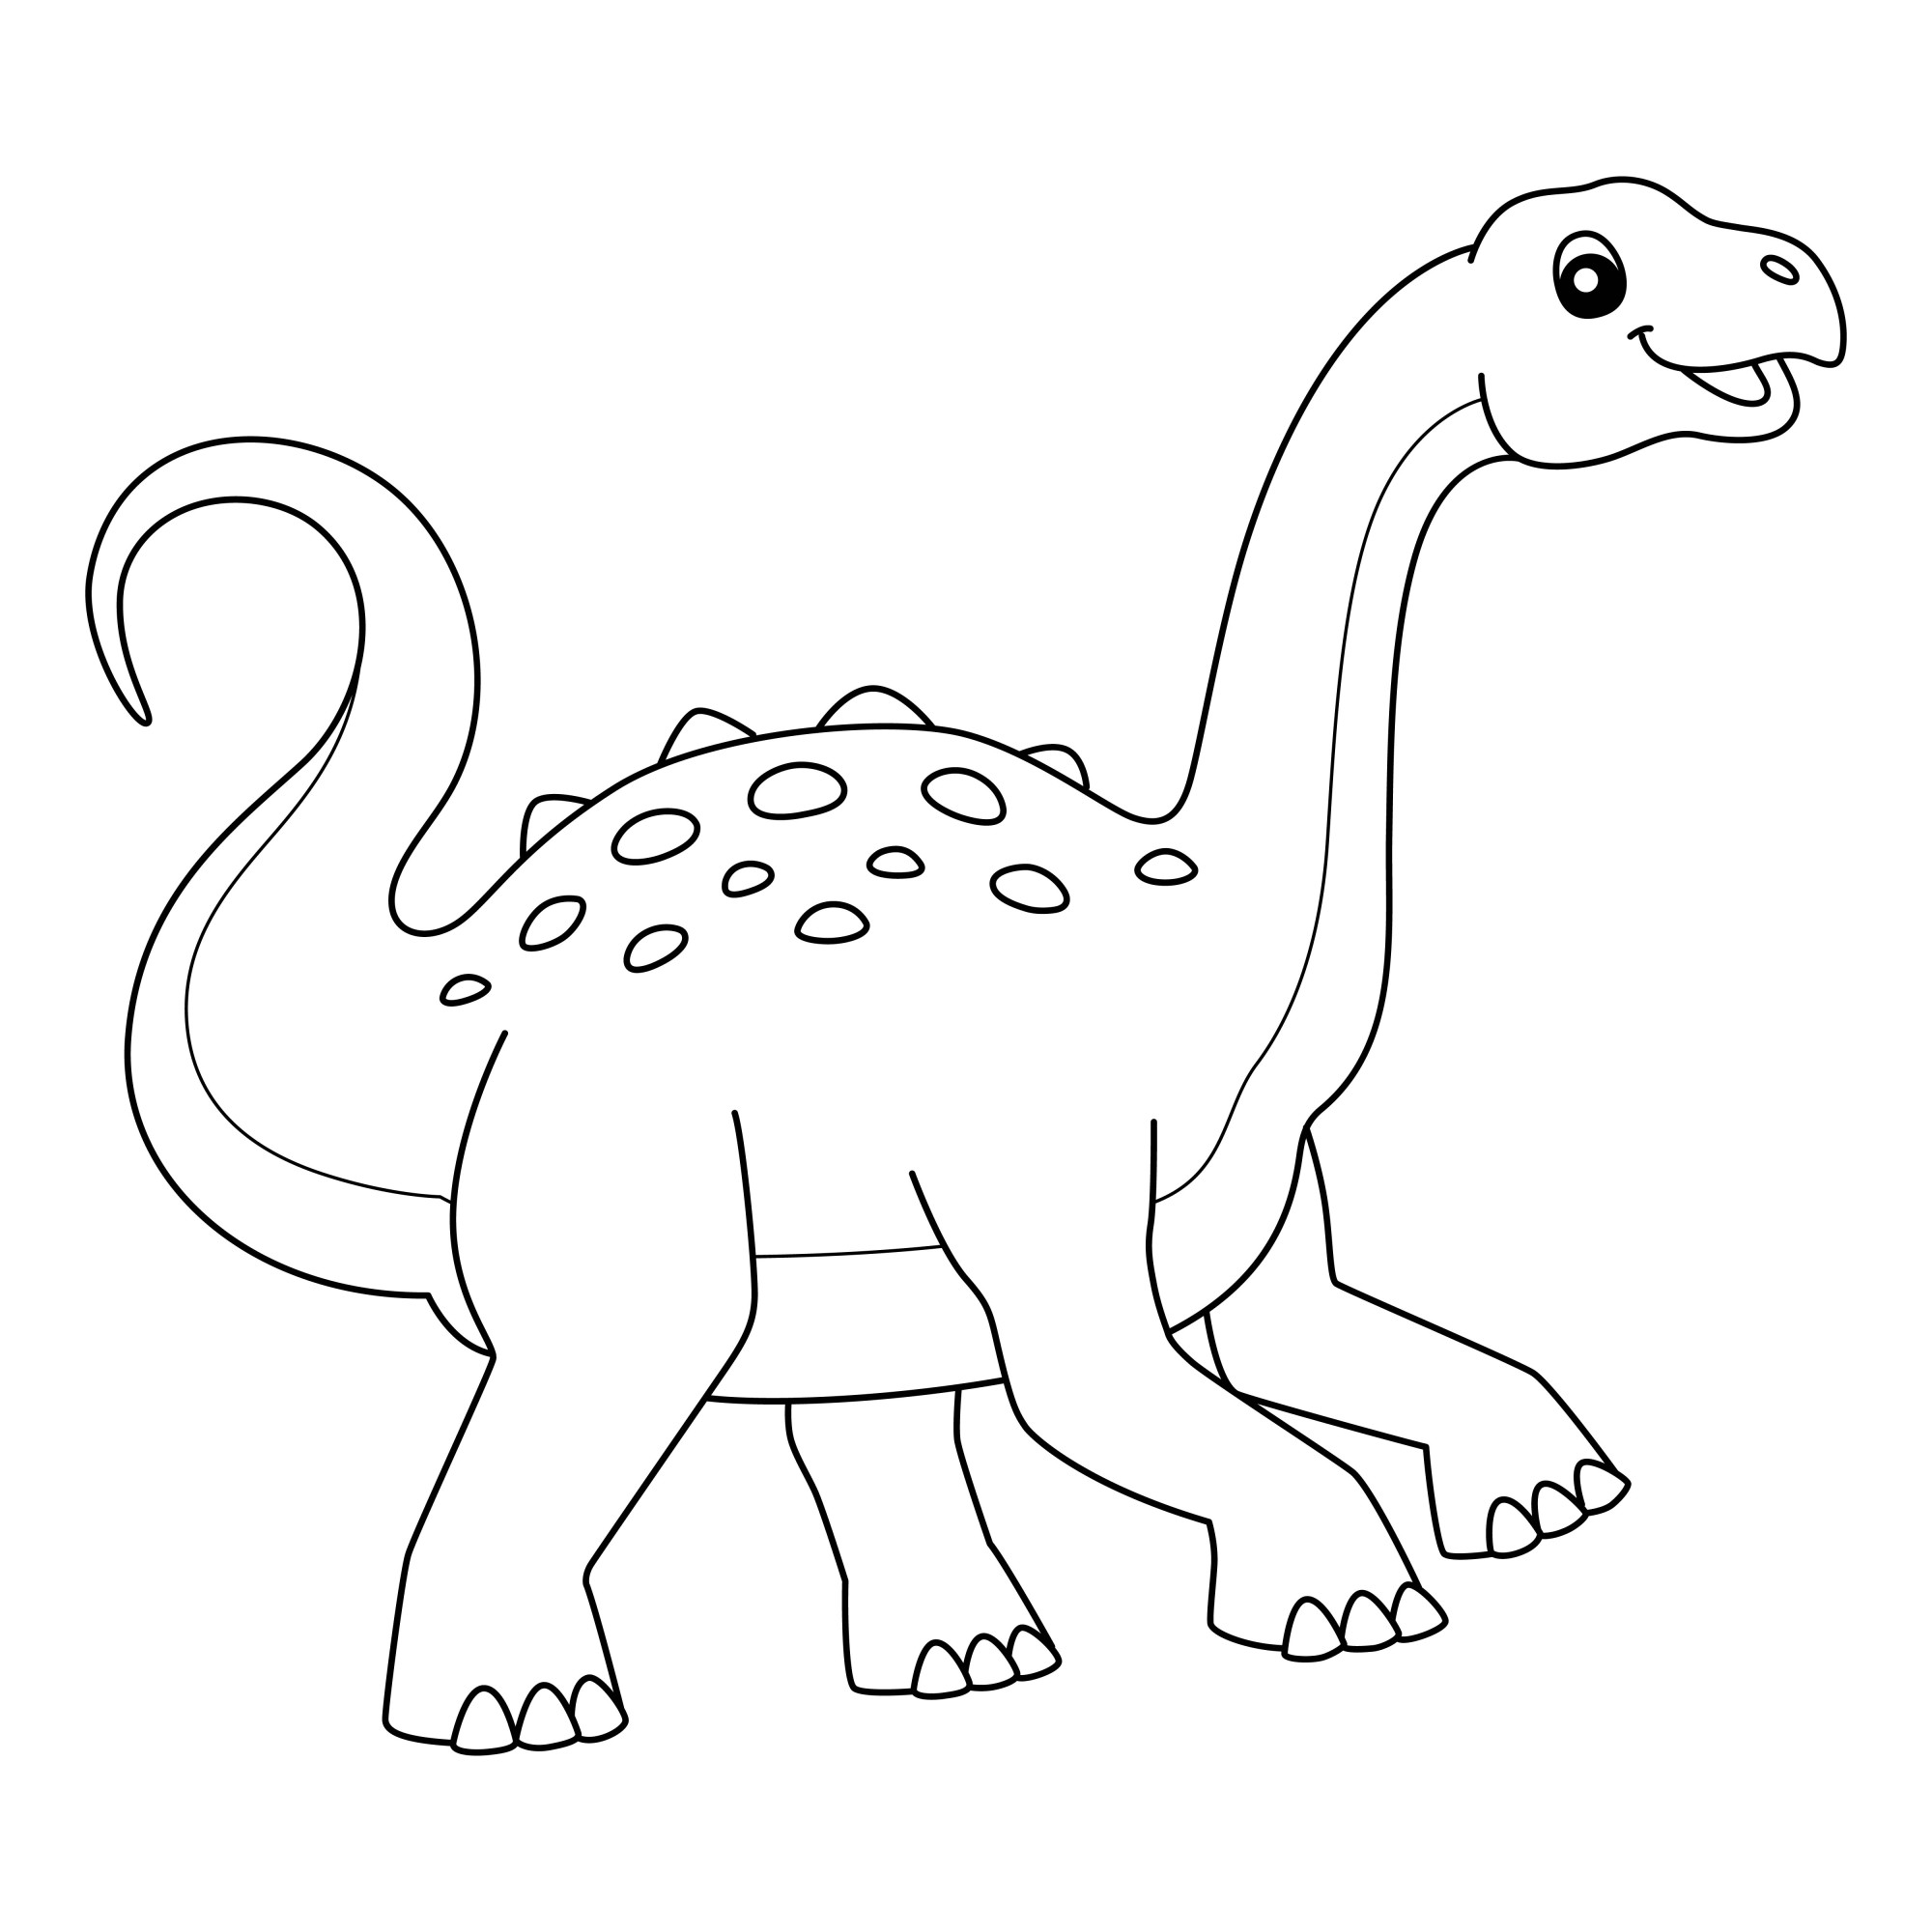 Раскраска для детей: динозавр Неукензавр